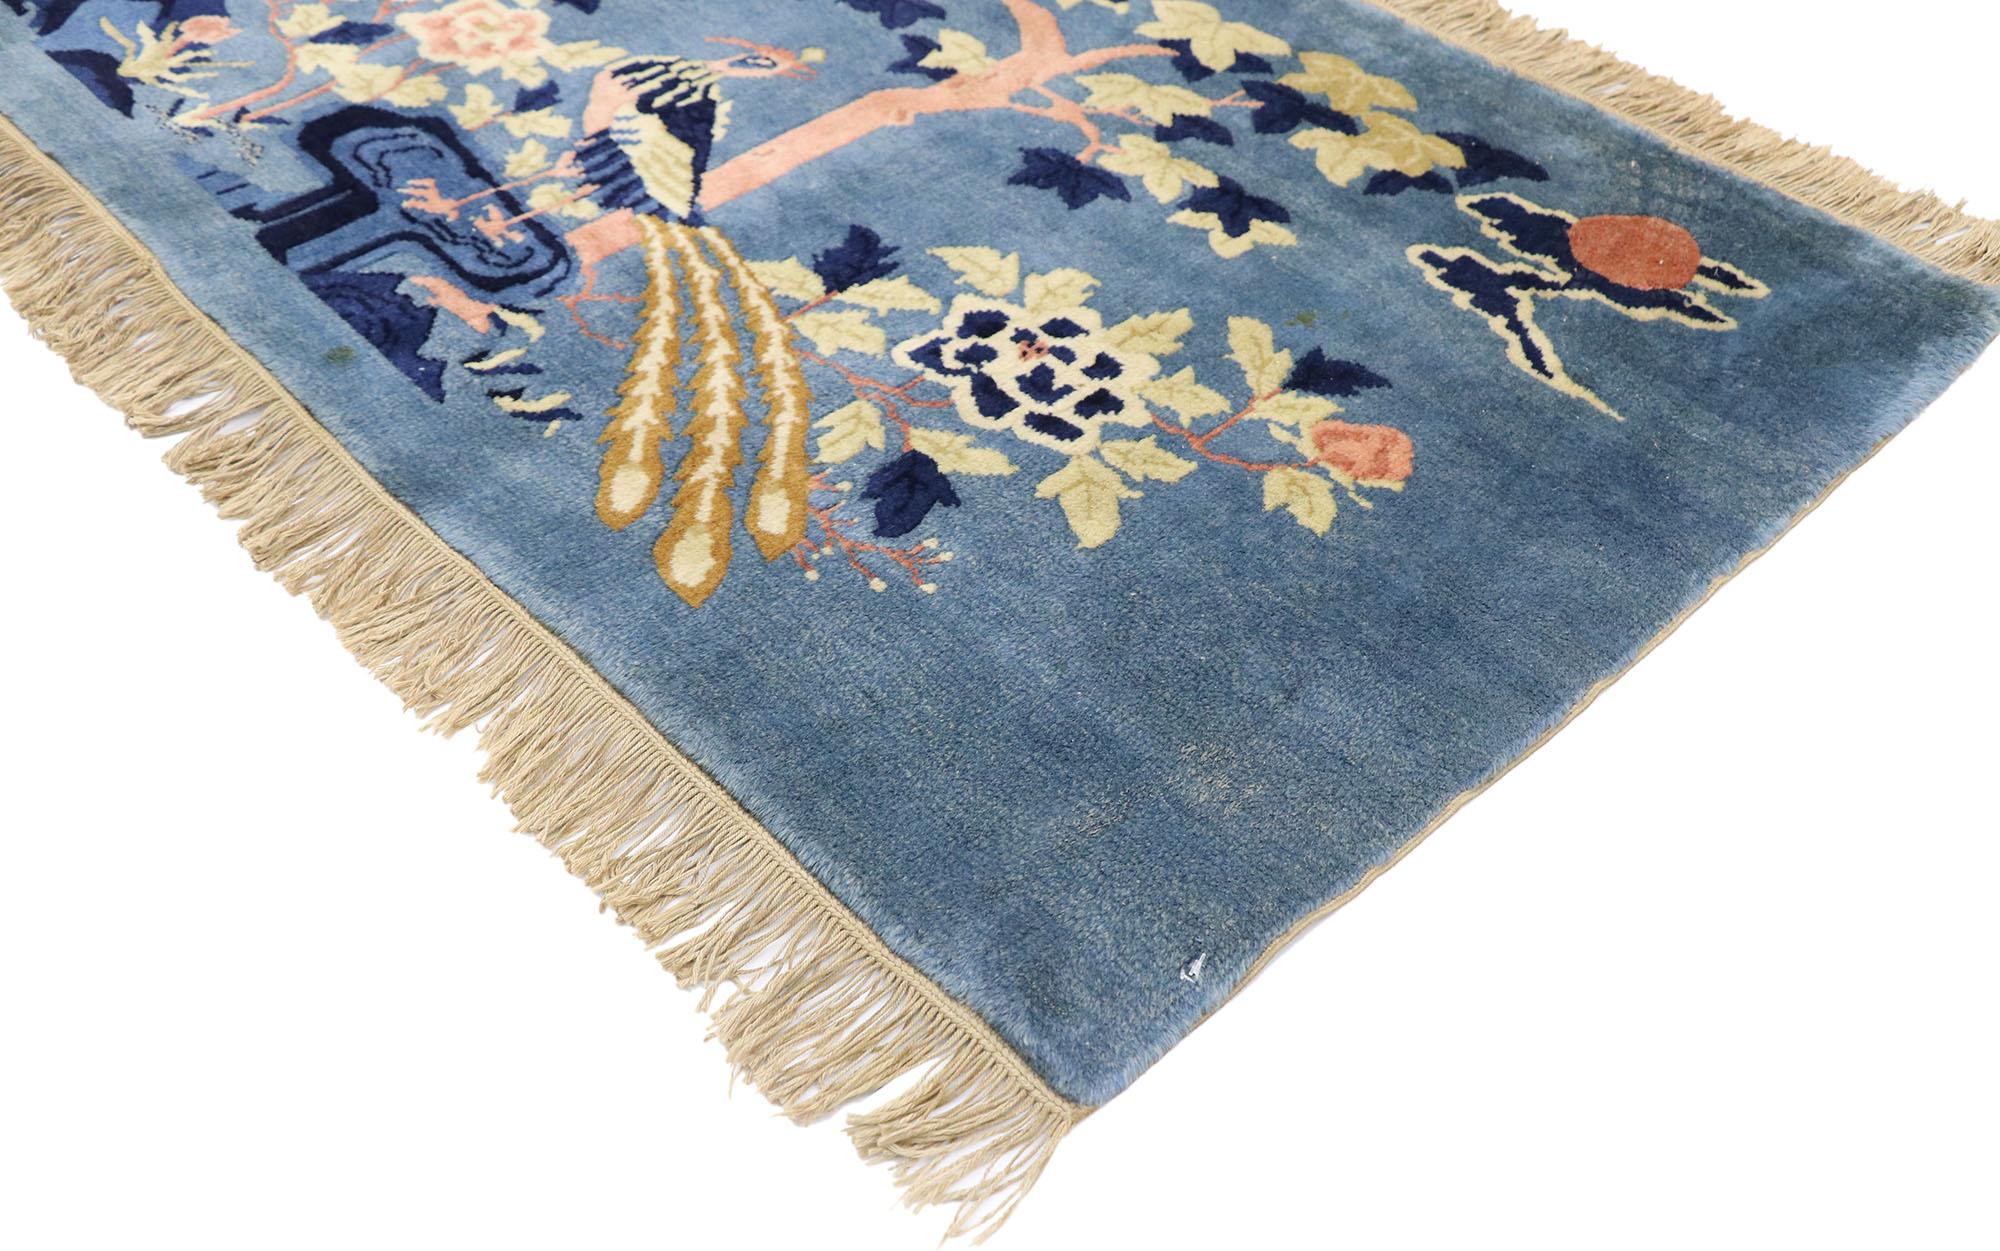 77585 Antique tapis chinois Art Déco Pictorial avec Chinoiserie Chic Style 02'04 x 04'07. Ce tapis Baotou chinois ancien en laine nouée à la main présente une scène de paysage picturale avec deux oiseaux phénix dans un magnifique jardin sur fond